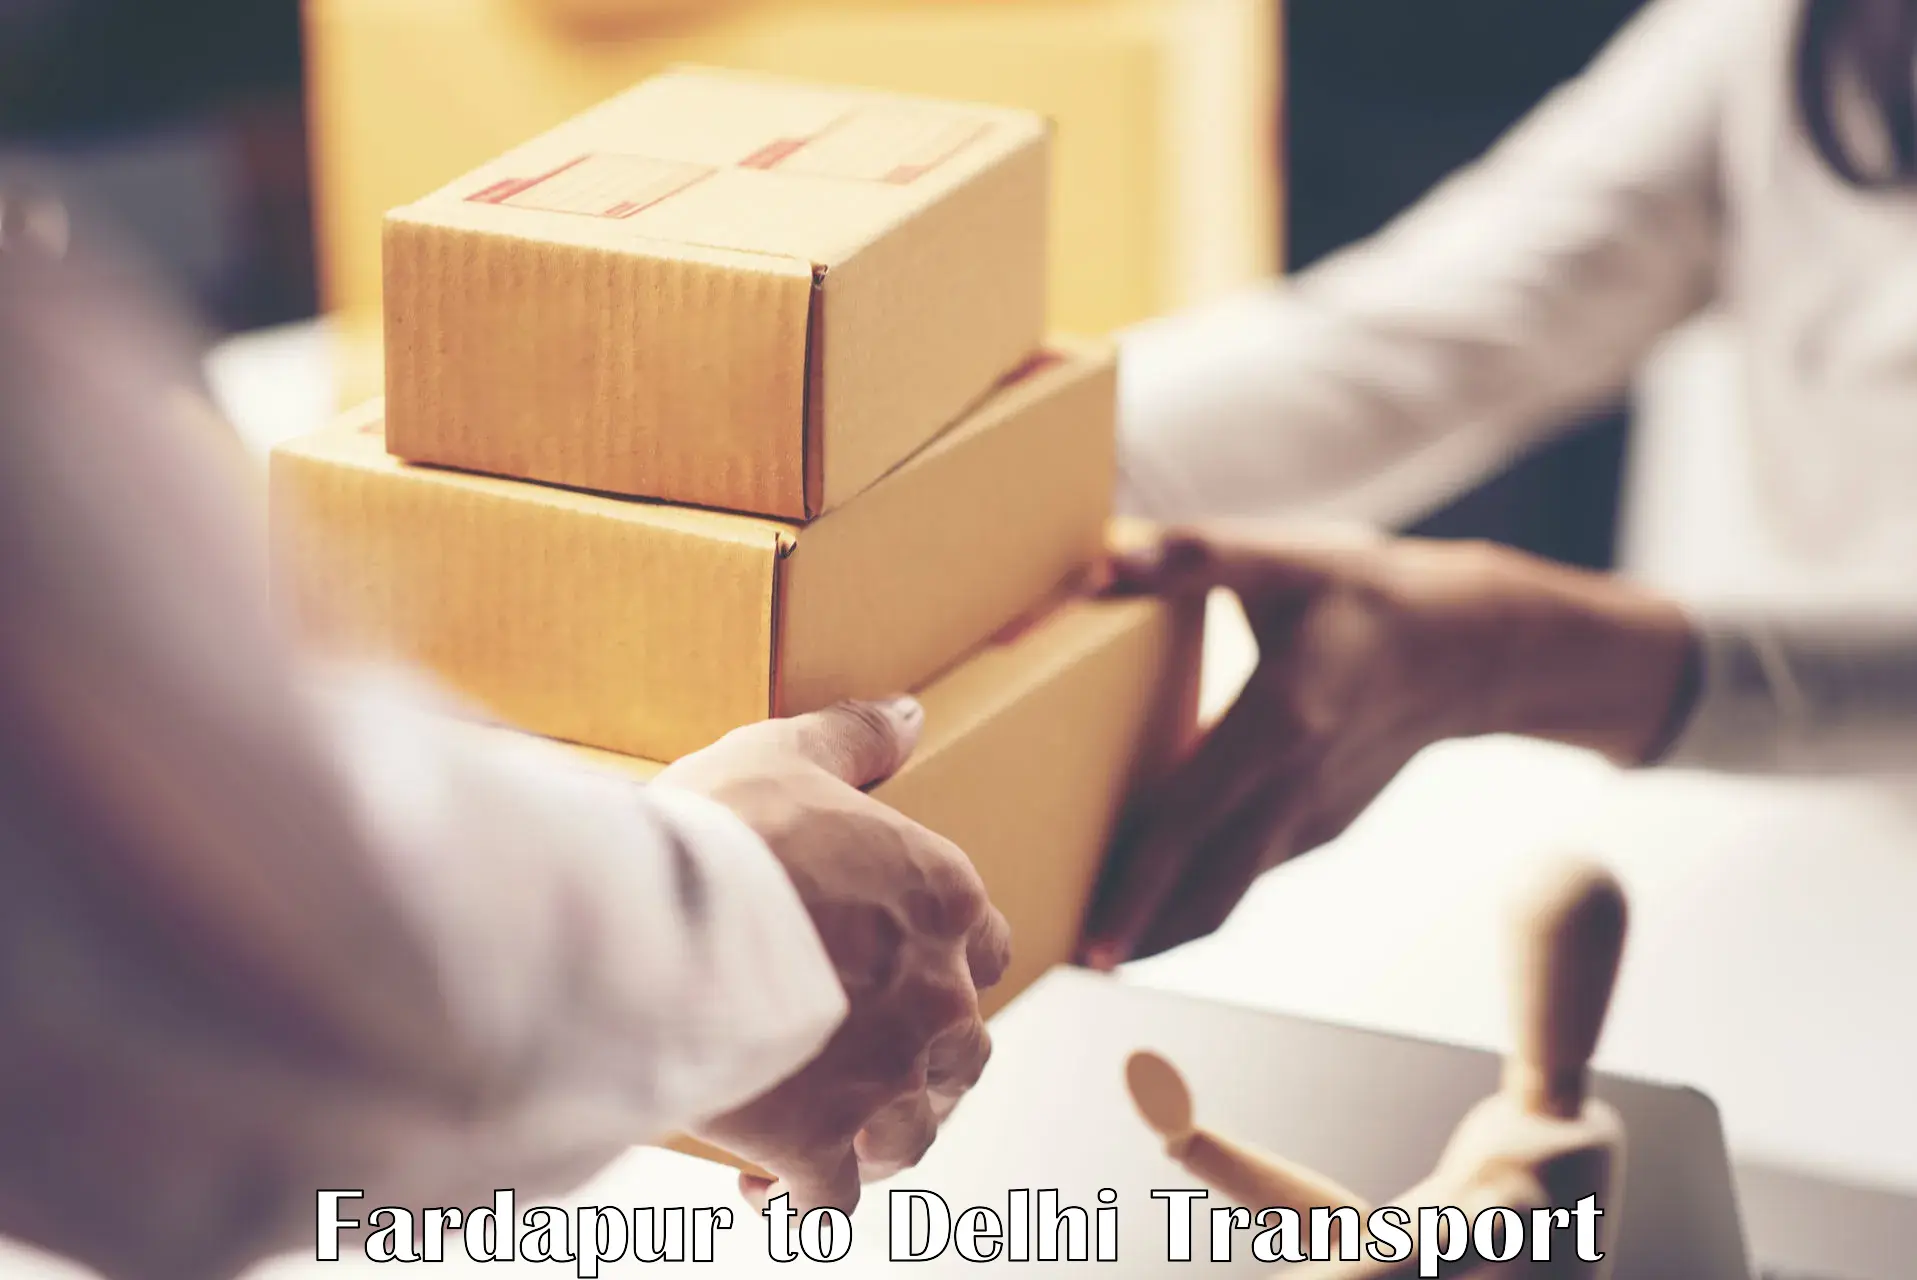 Cargo transport services Fardapur to Jamia Millia Islamia New Delhi